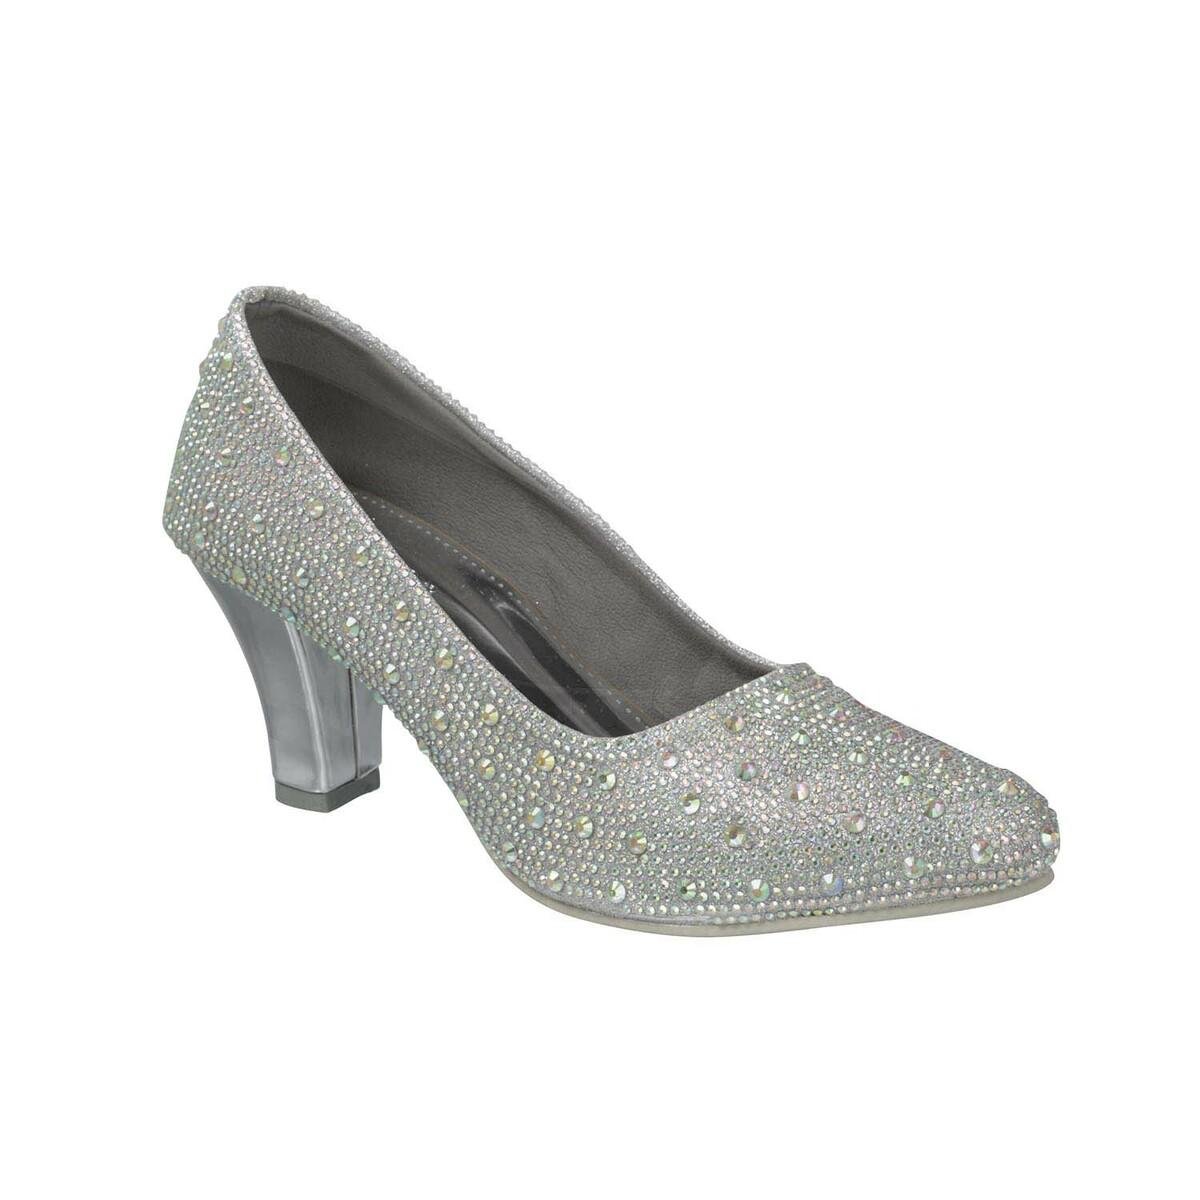 Silver Stilettos, Glitter High Heels, Size 8.5